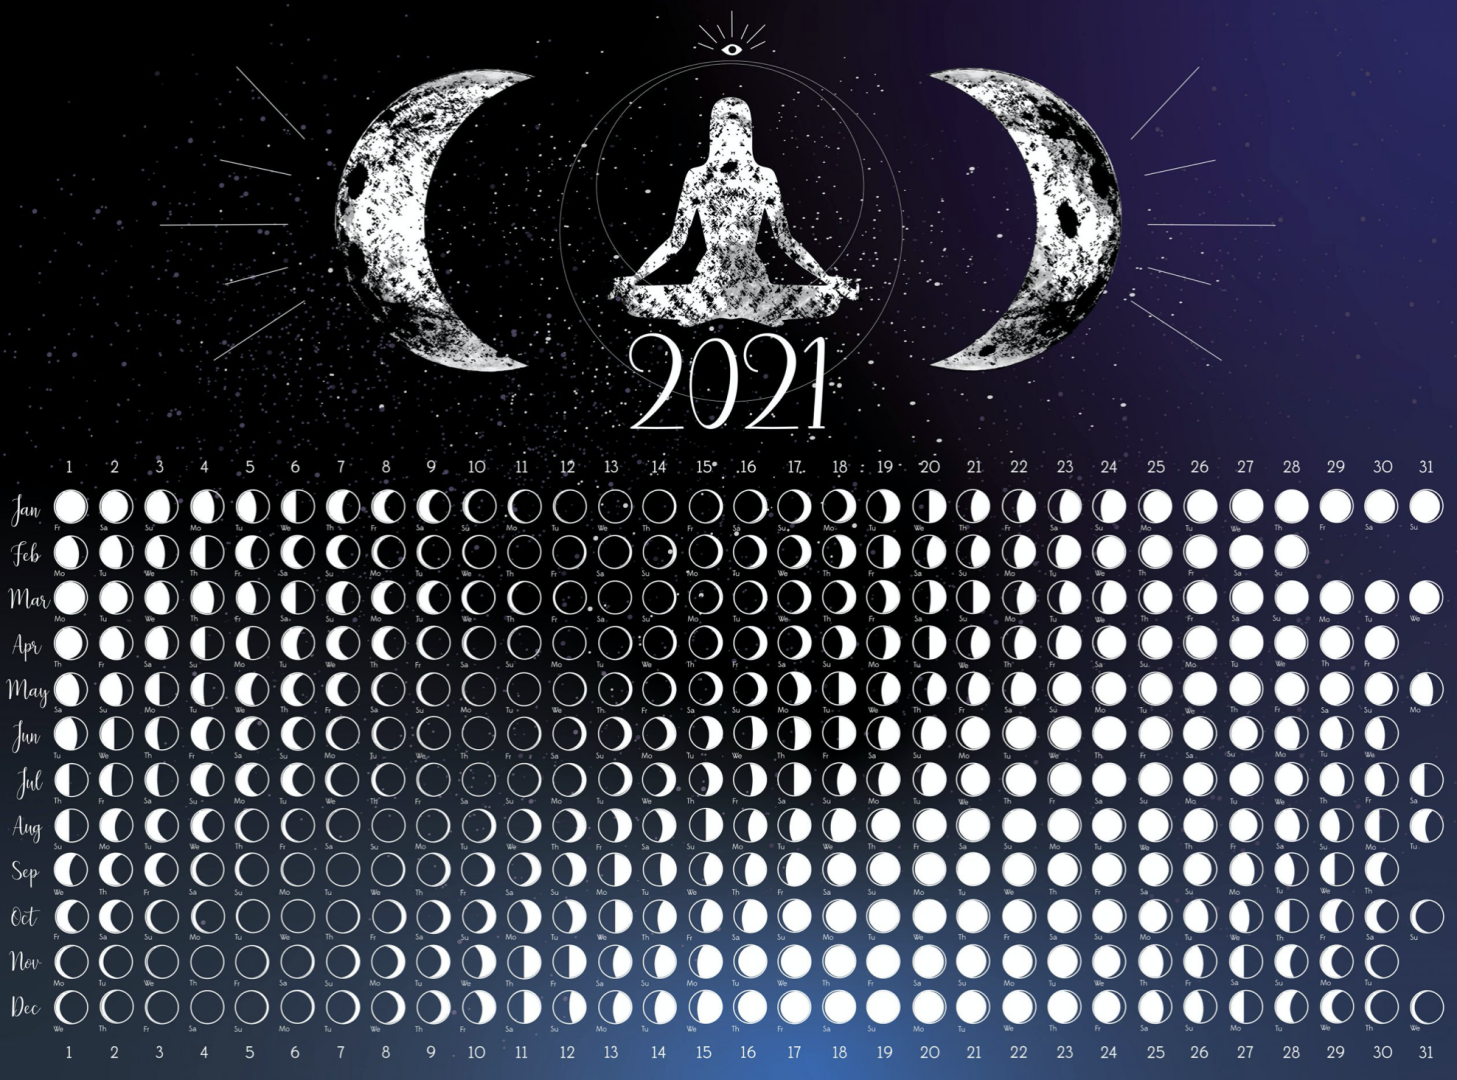 Лунный календарь 25 год. Календарь 2021 Луна лунный. Календарь полнолуний на 2021. Лунный календарь на 2021 год. Фазы Луны 2021 год.